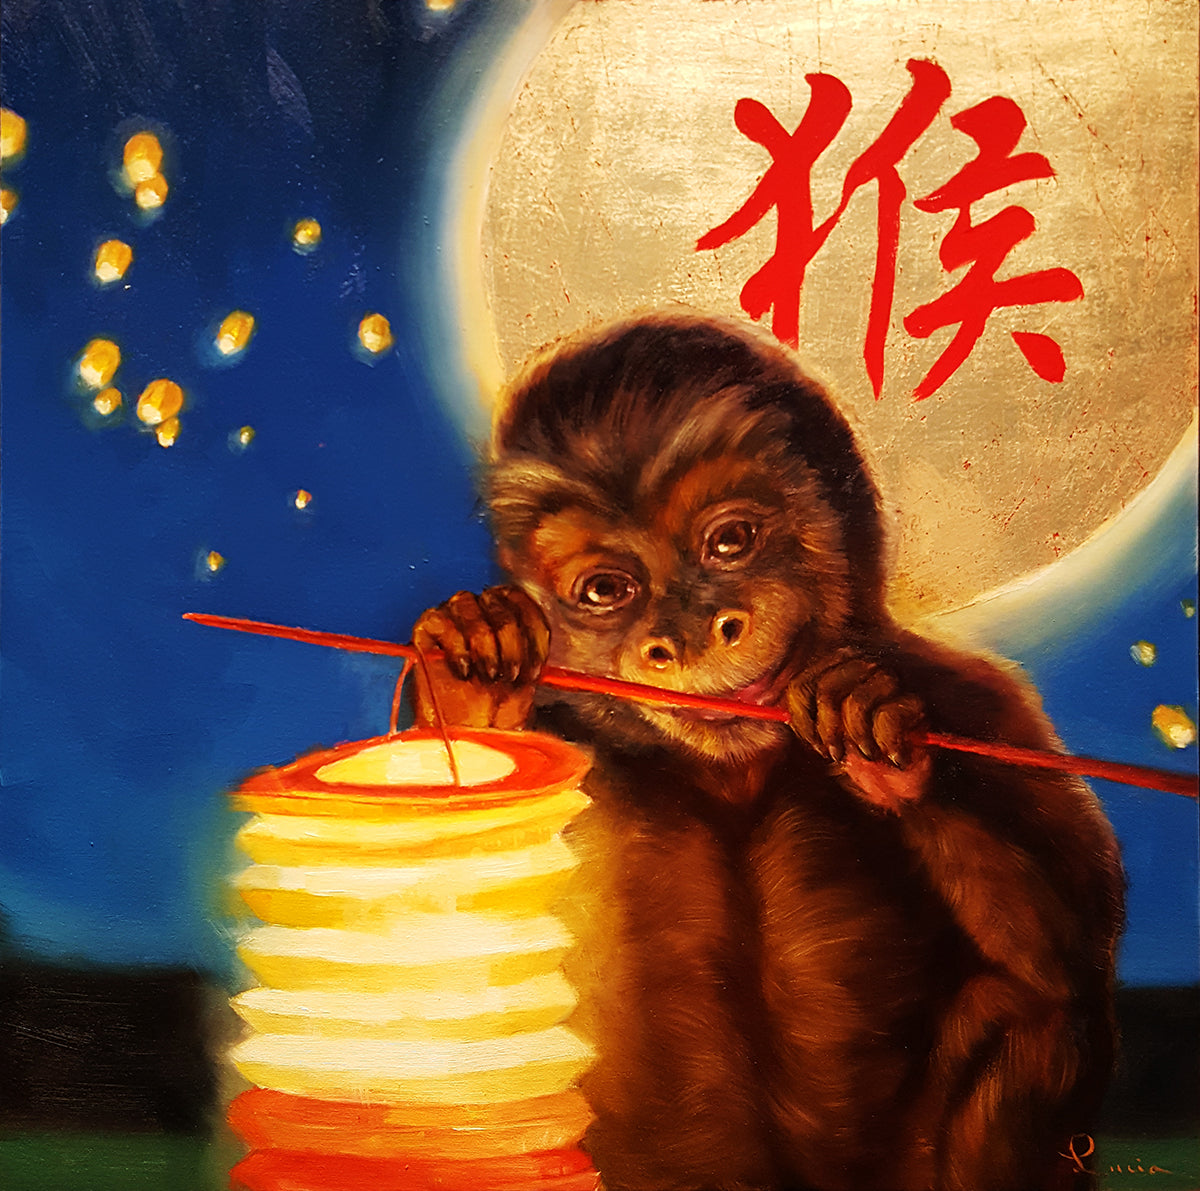 Monkeyshine (Year of the Monkey)